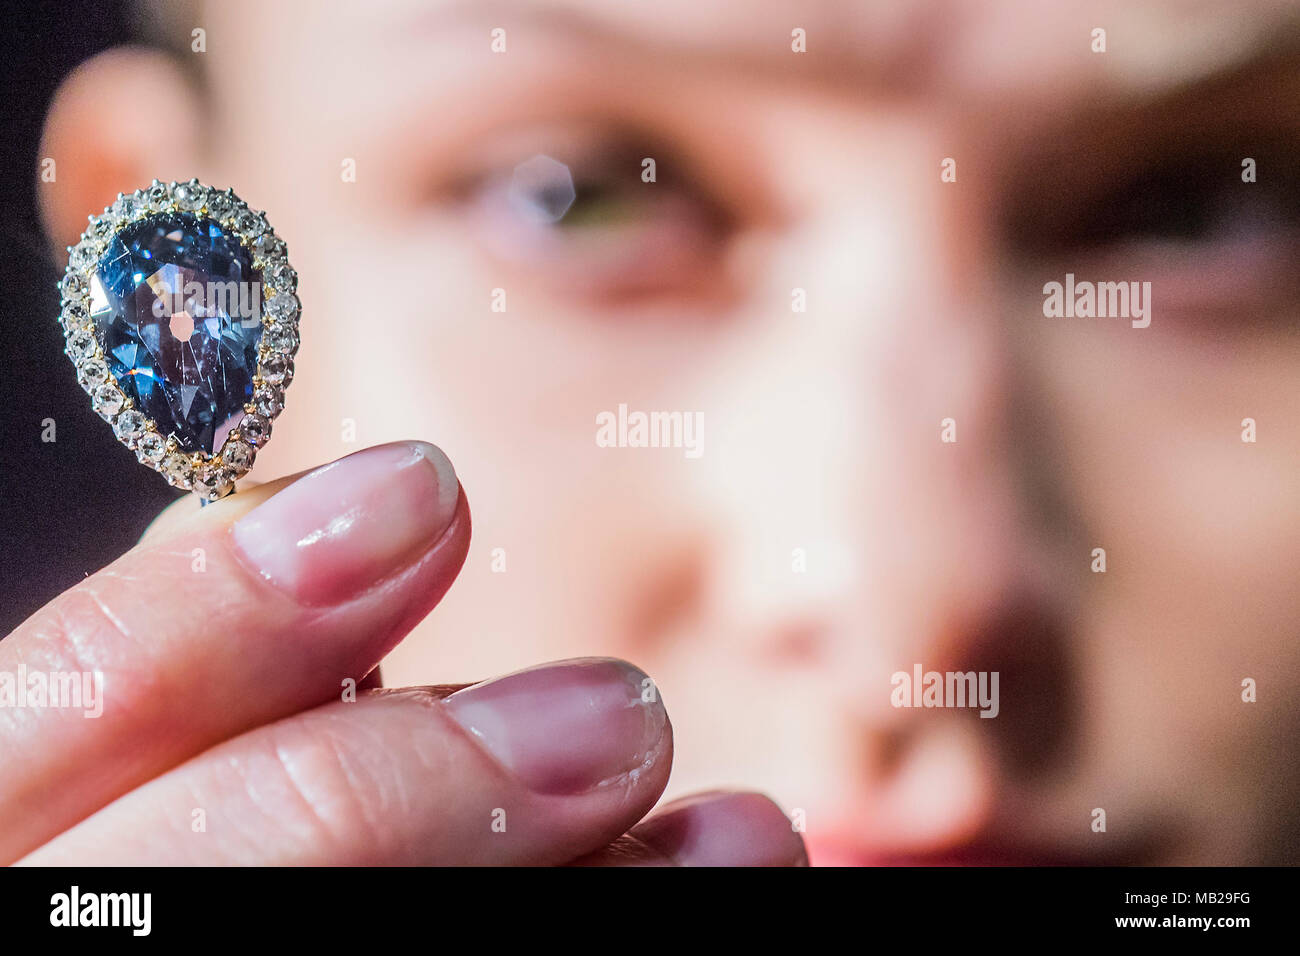 5 Carat Diamond Stockfotos und -bilder Kaufen - Alamy